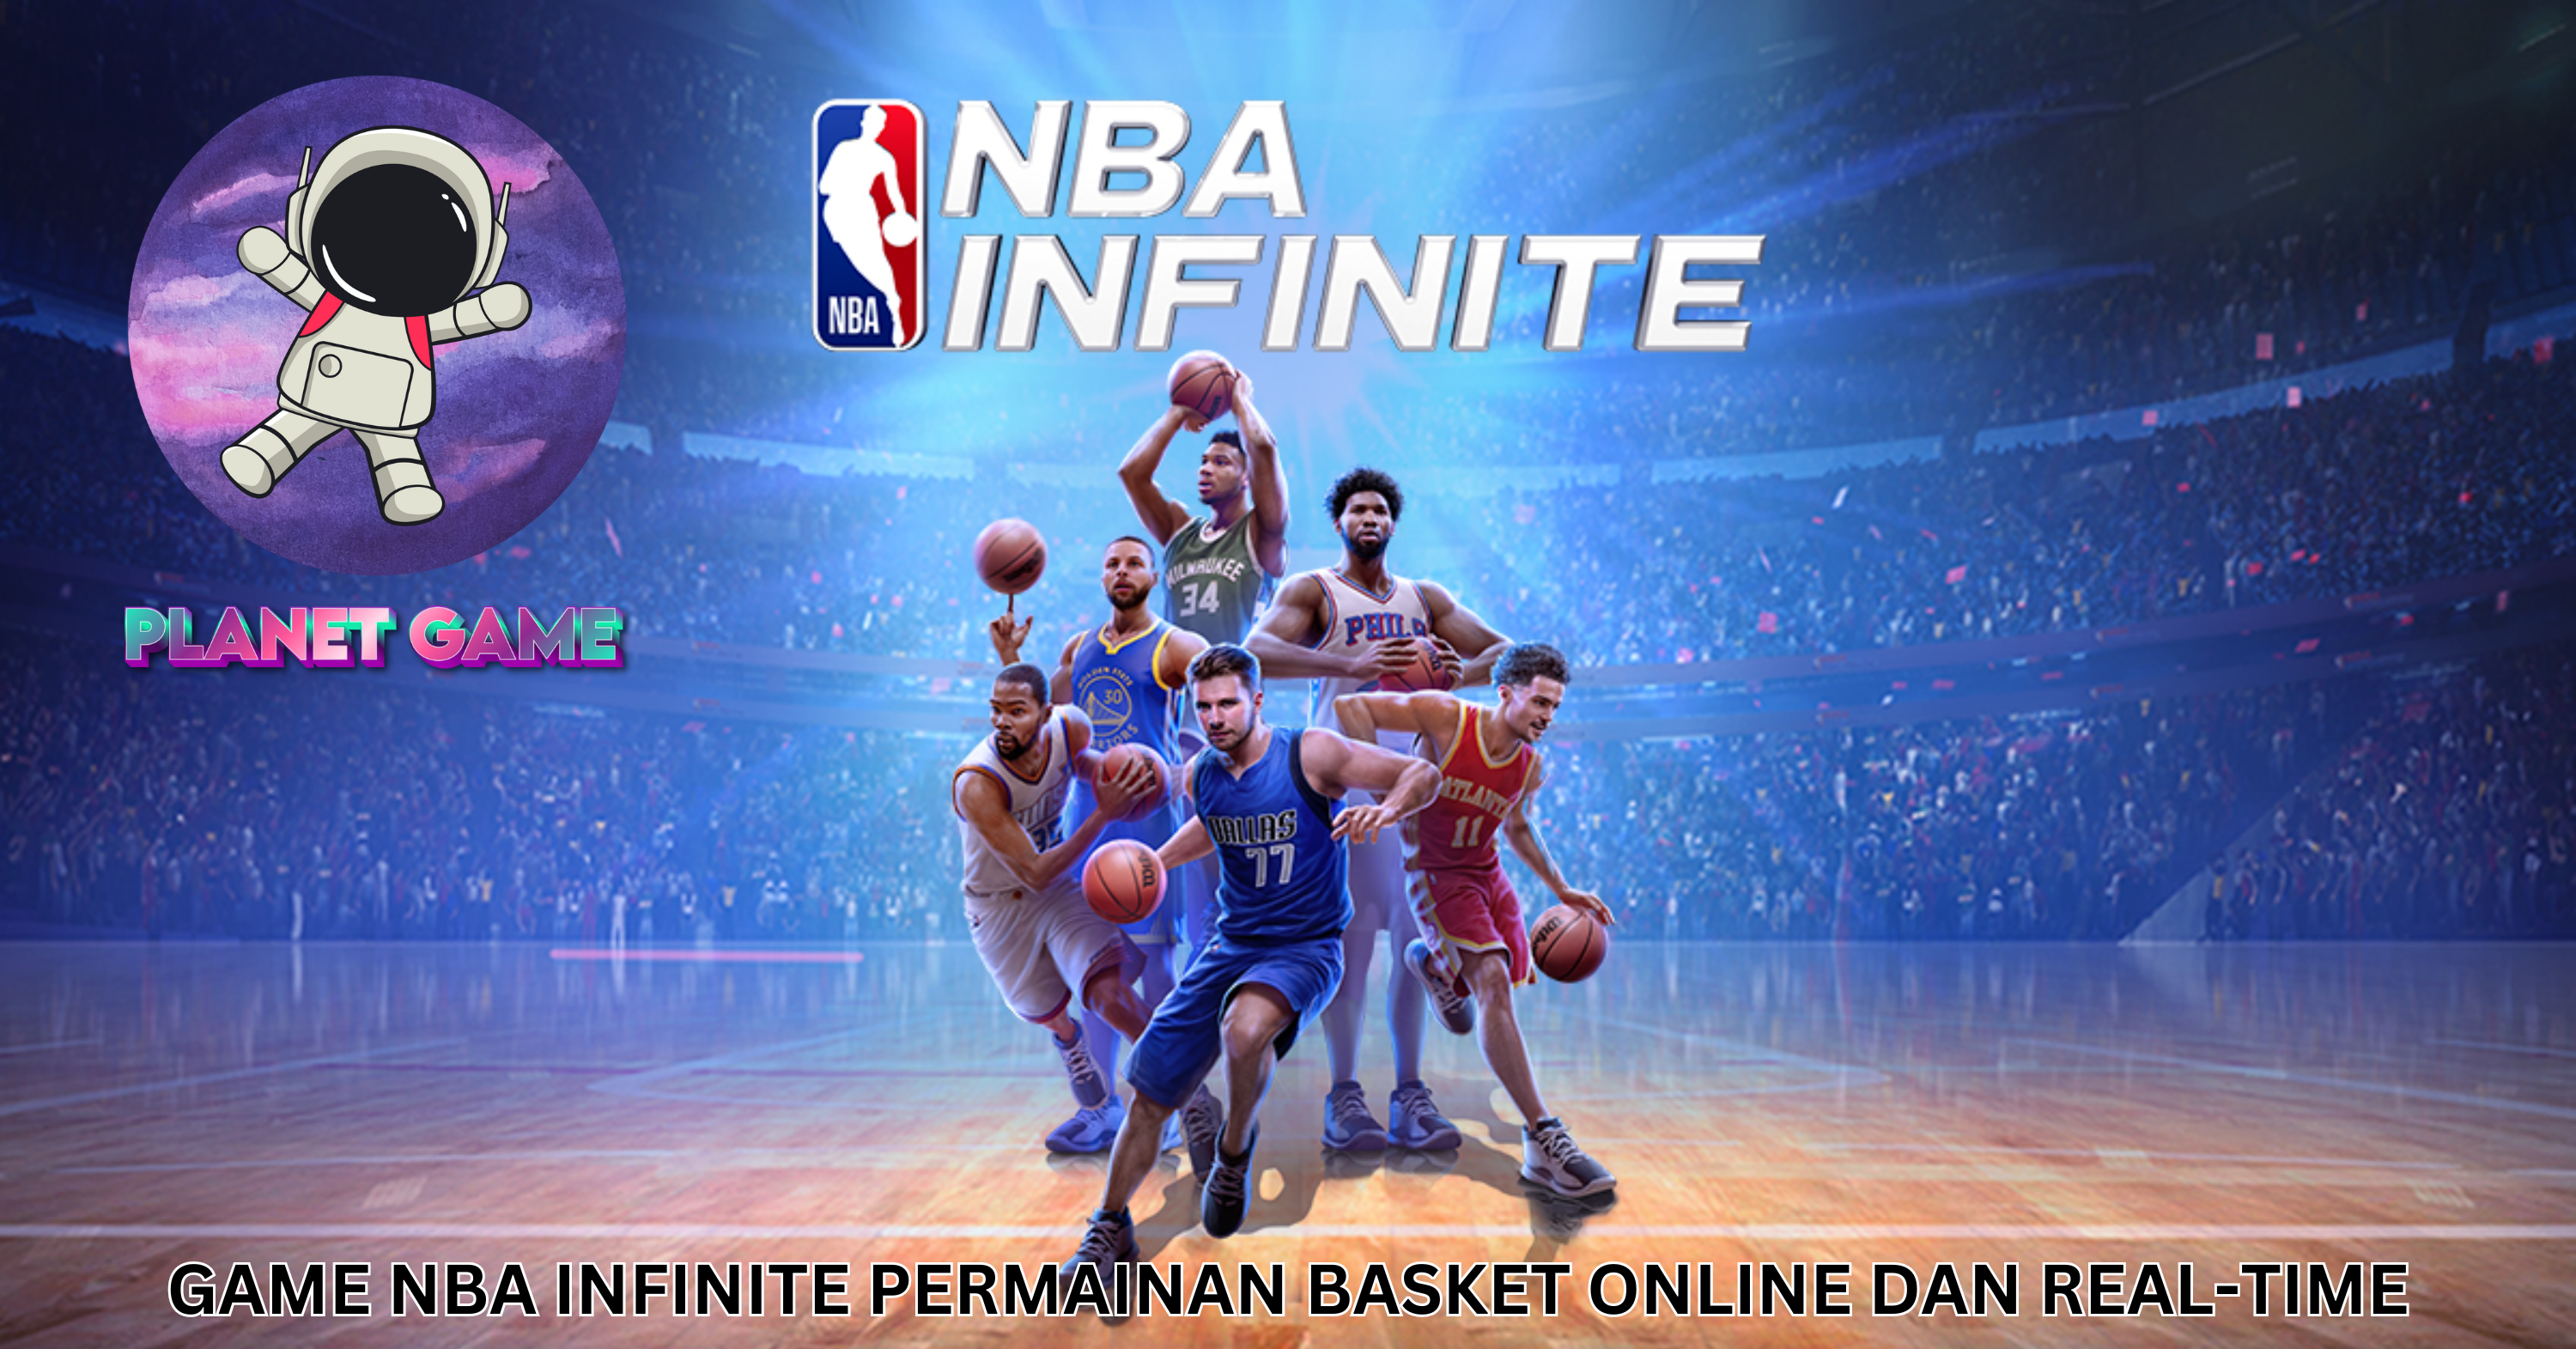 Game NBA Infinite, Permainan Basket Online dan Real-time